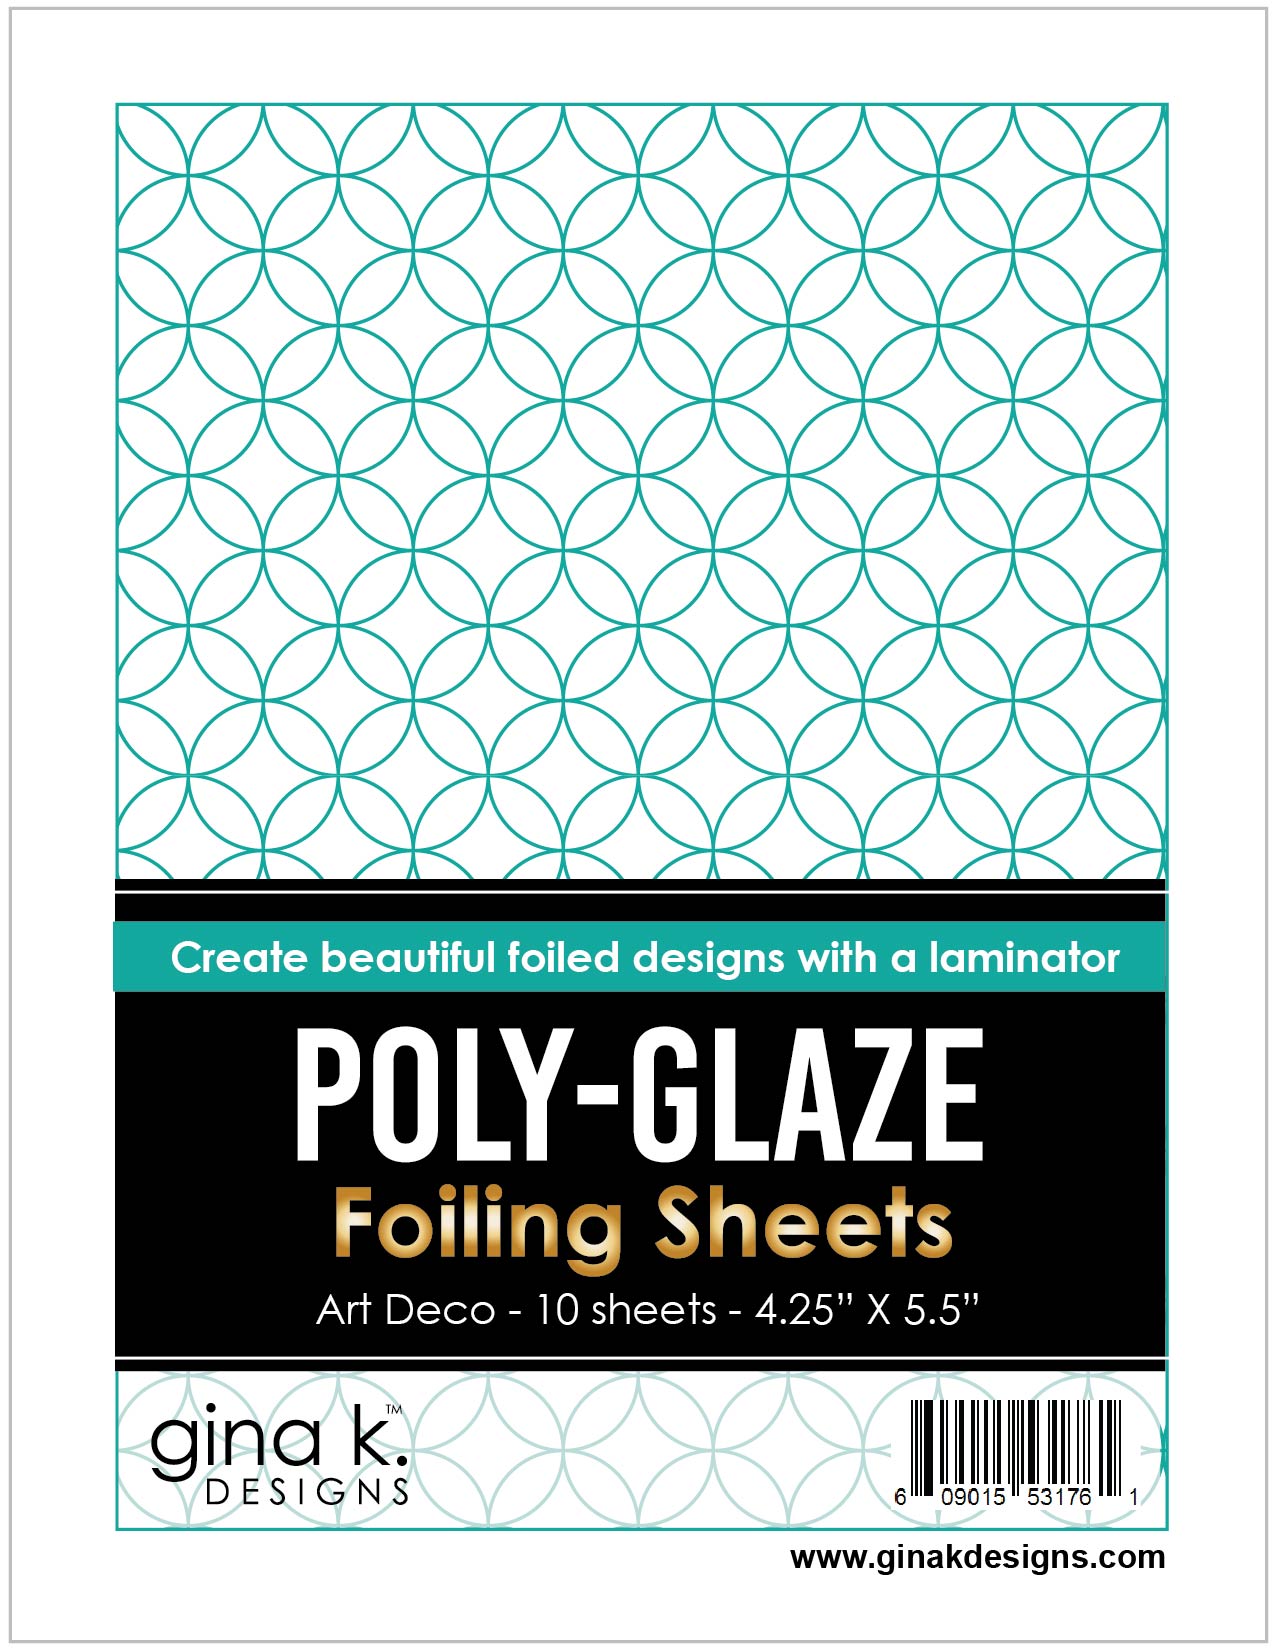 POLY-GLAZE Foiling Sheets- Art Deco